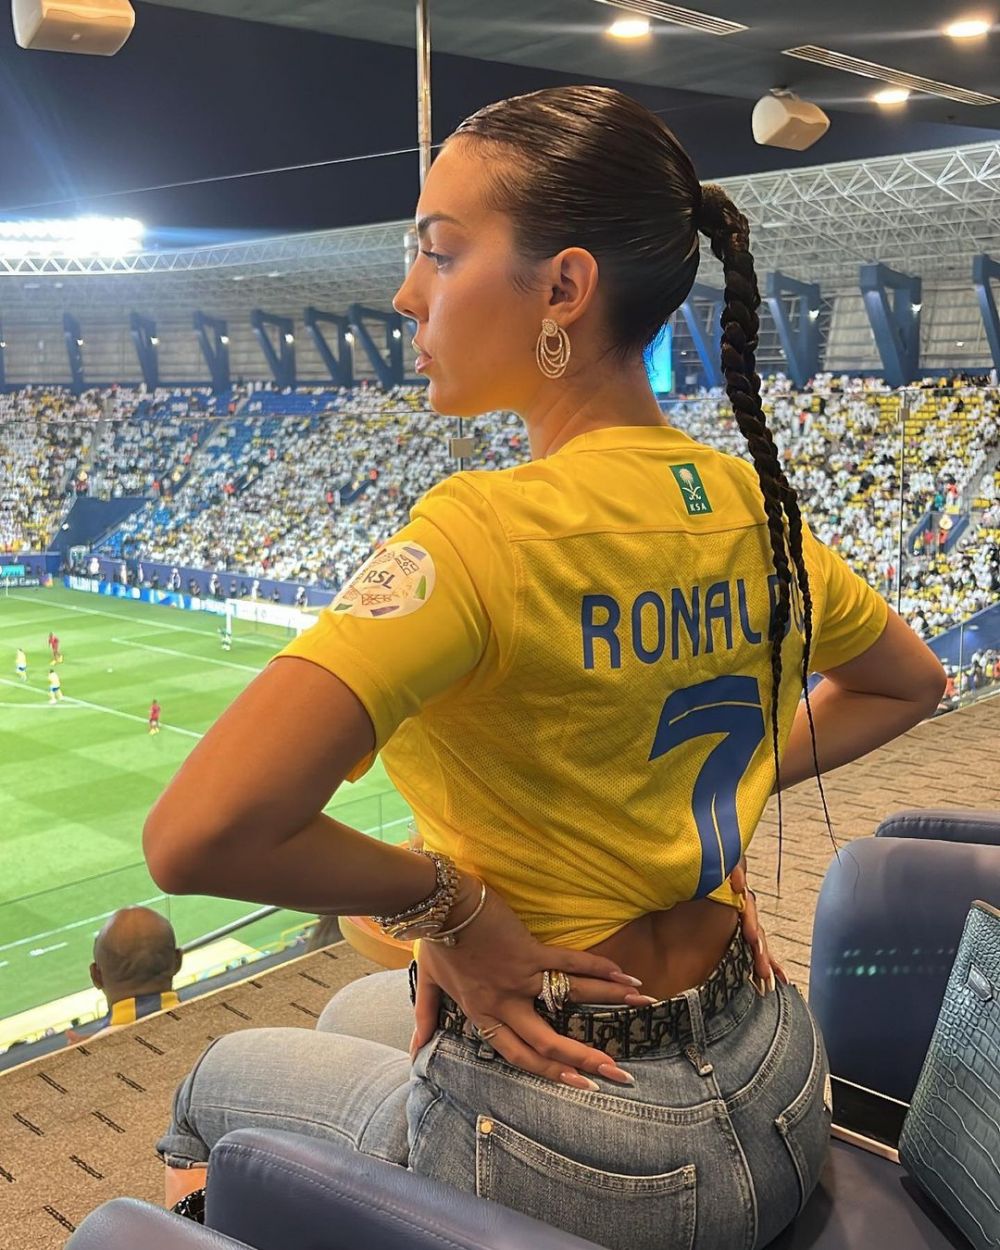 Nimeni nu s-a mai uitat la Ronaldo când a apărut așa! Georgina Rodriguez a venit la stadion cu o poșetă de 140.000 de dolari și cizme cu toc_5